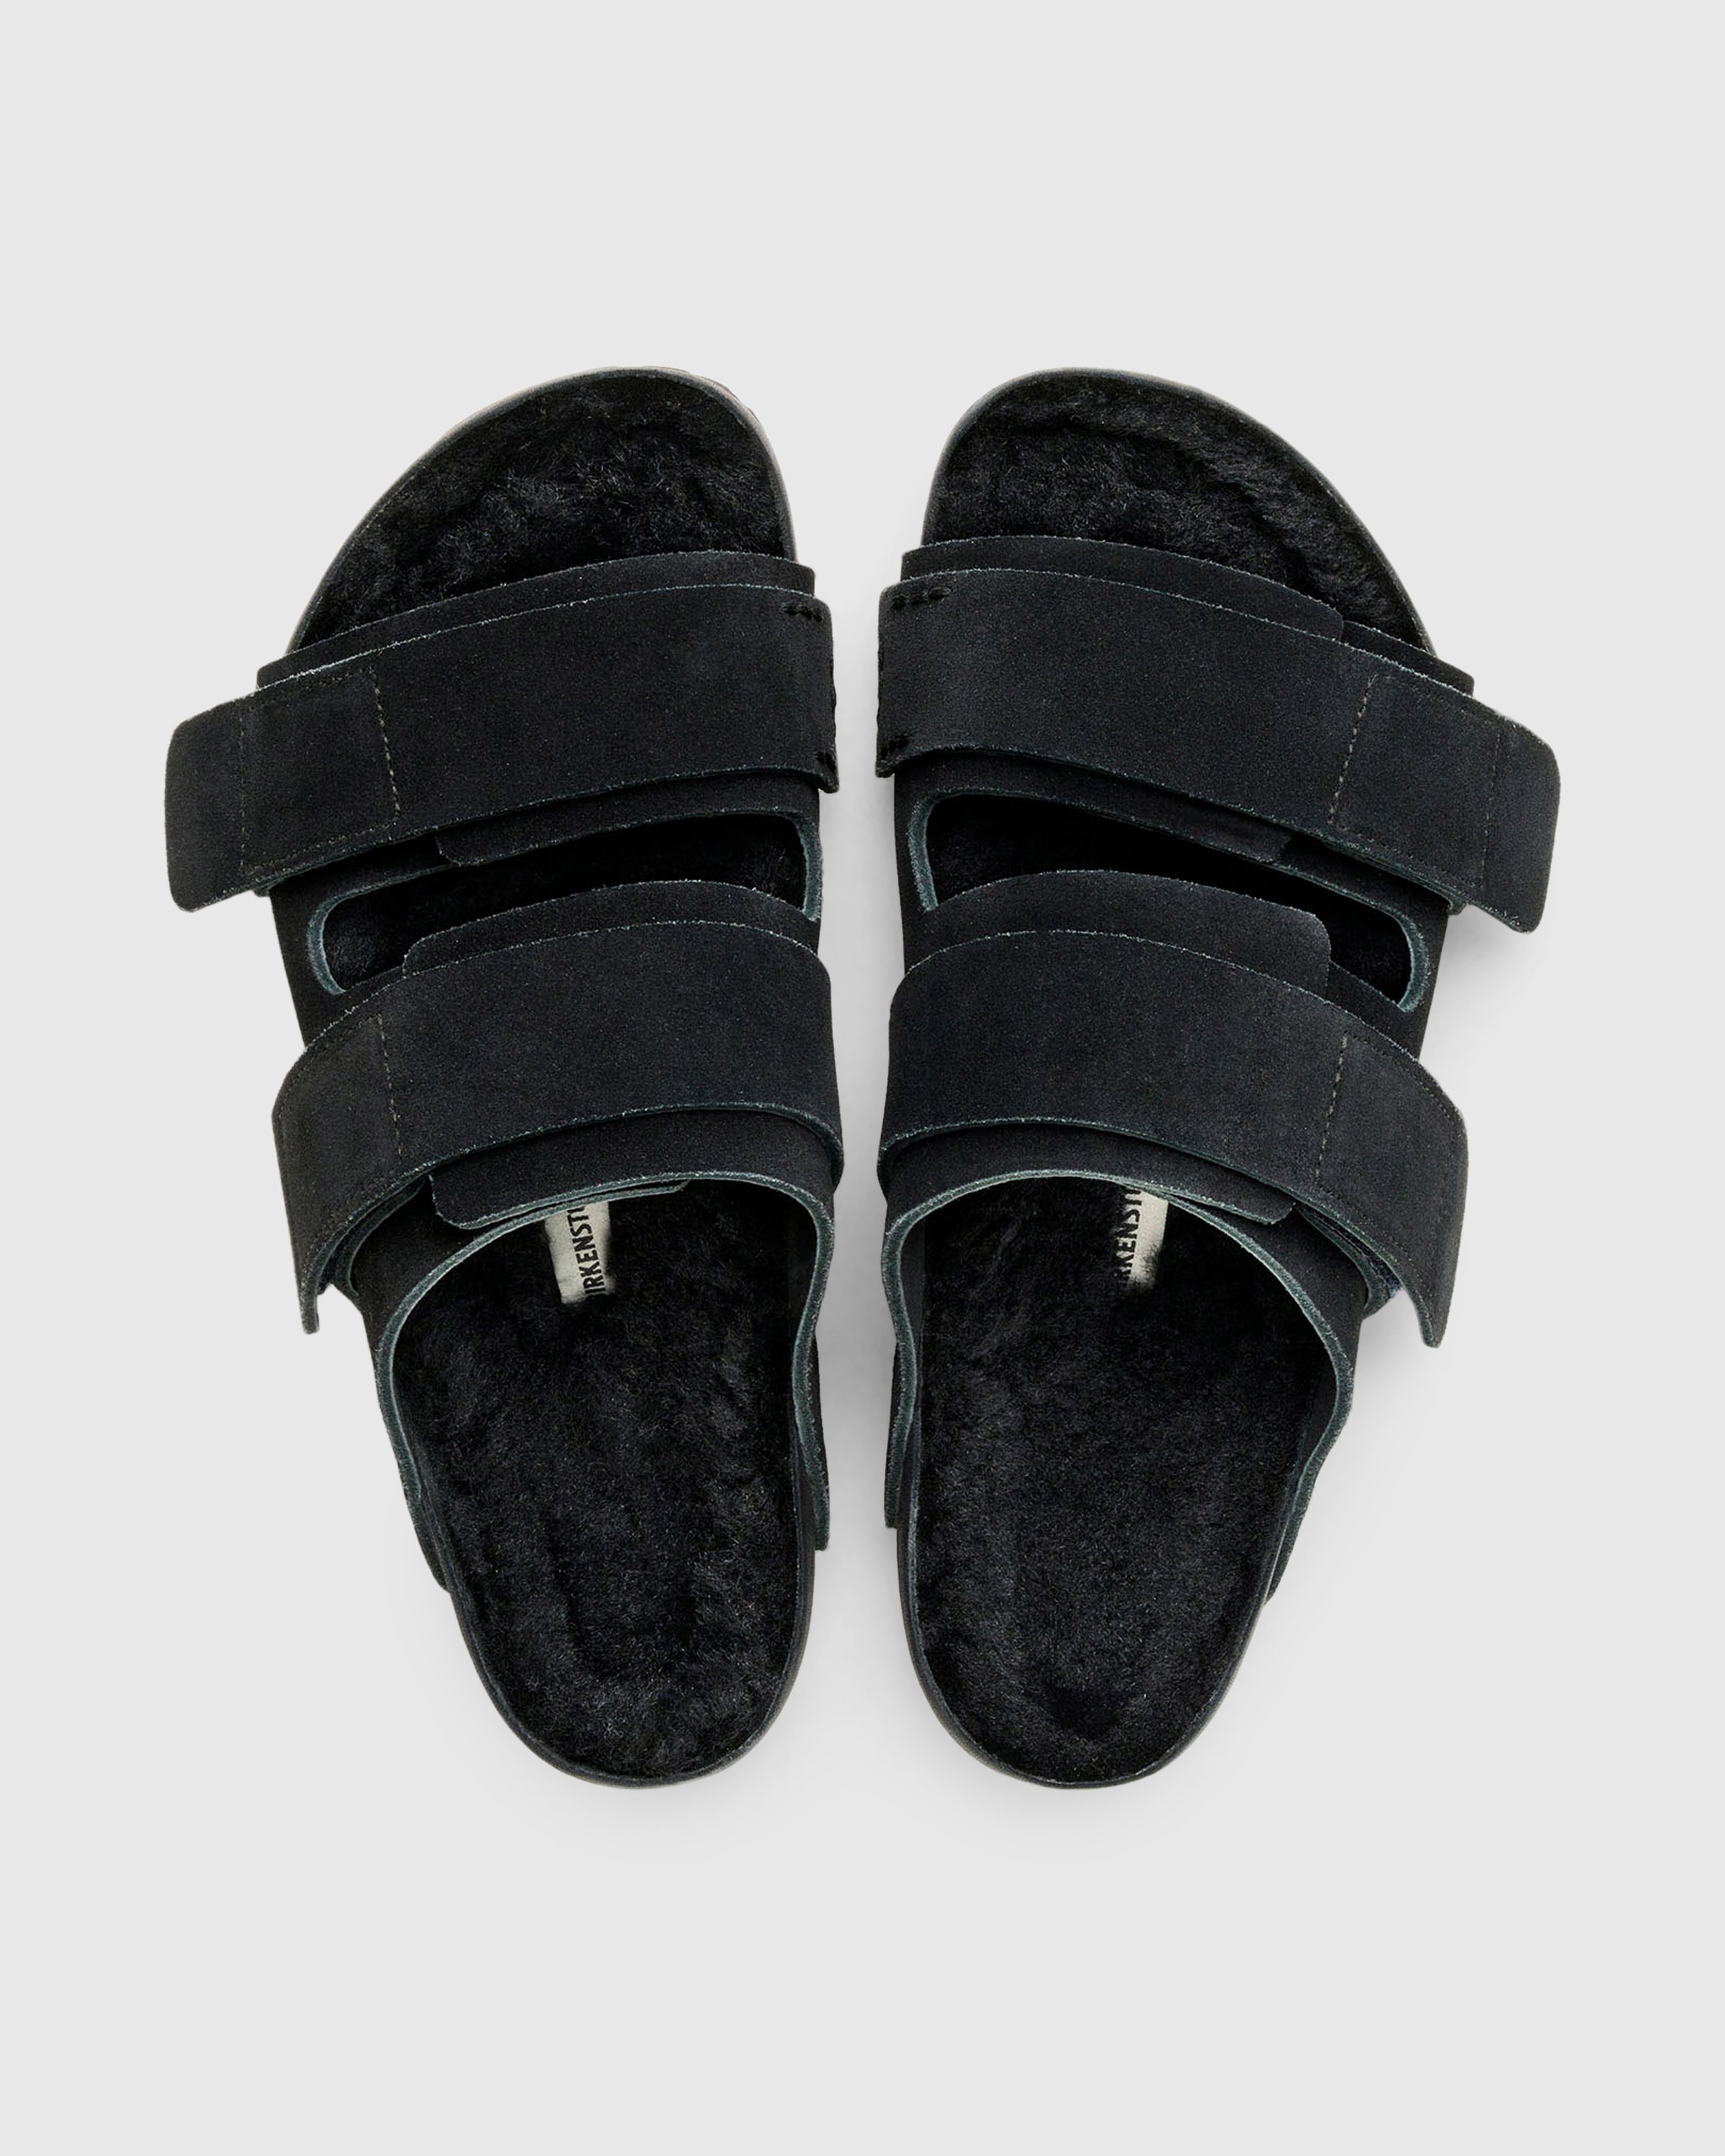 Birkenstock x Tekla - Shearling Uji Slate/Black - Footwear - Black - Image 5